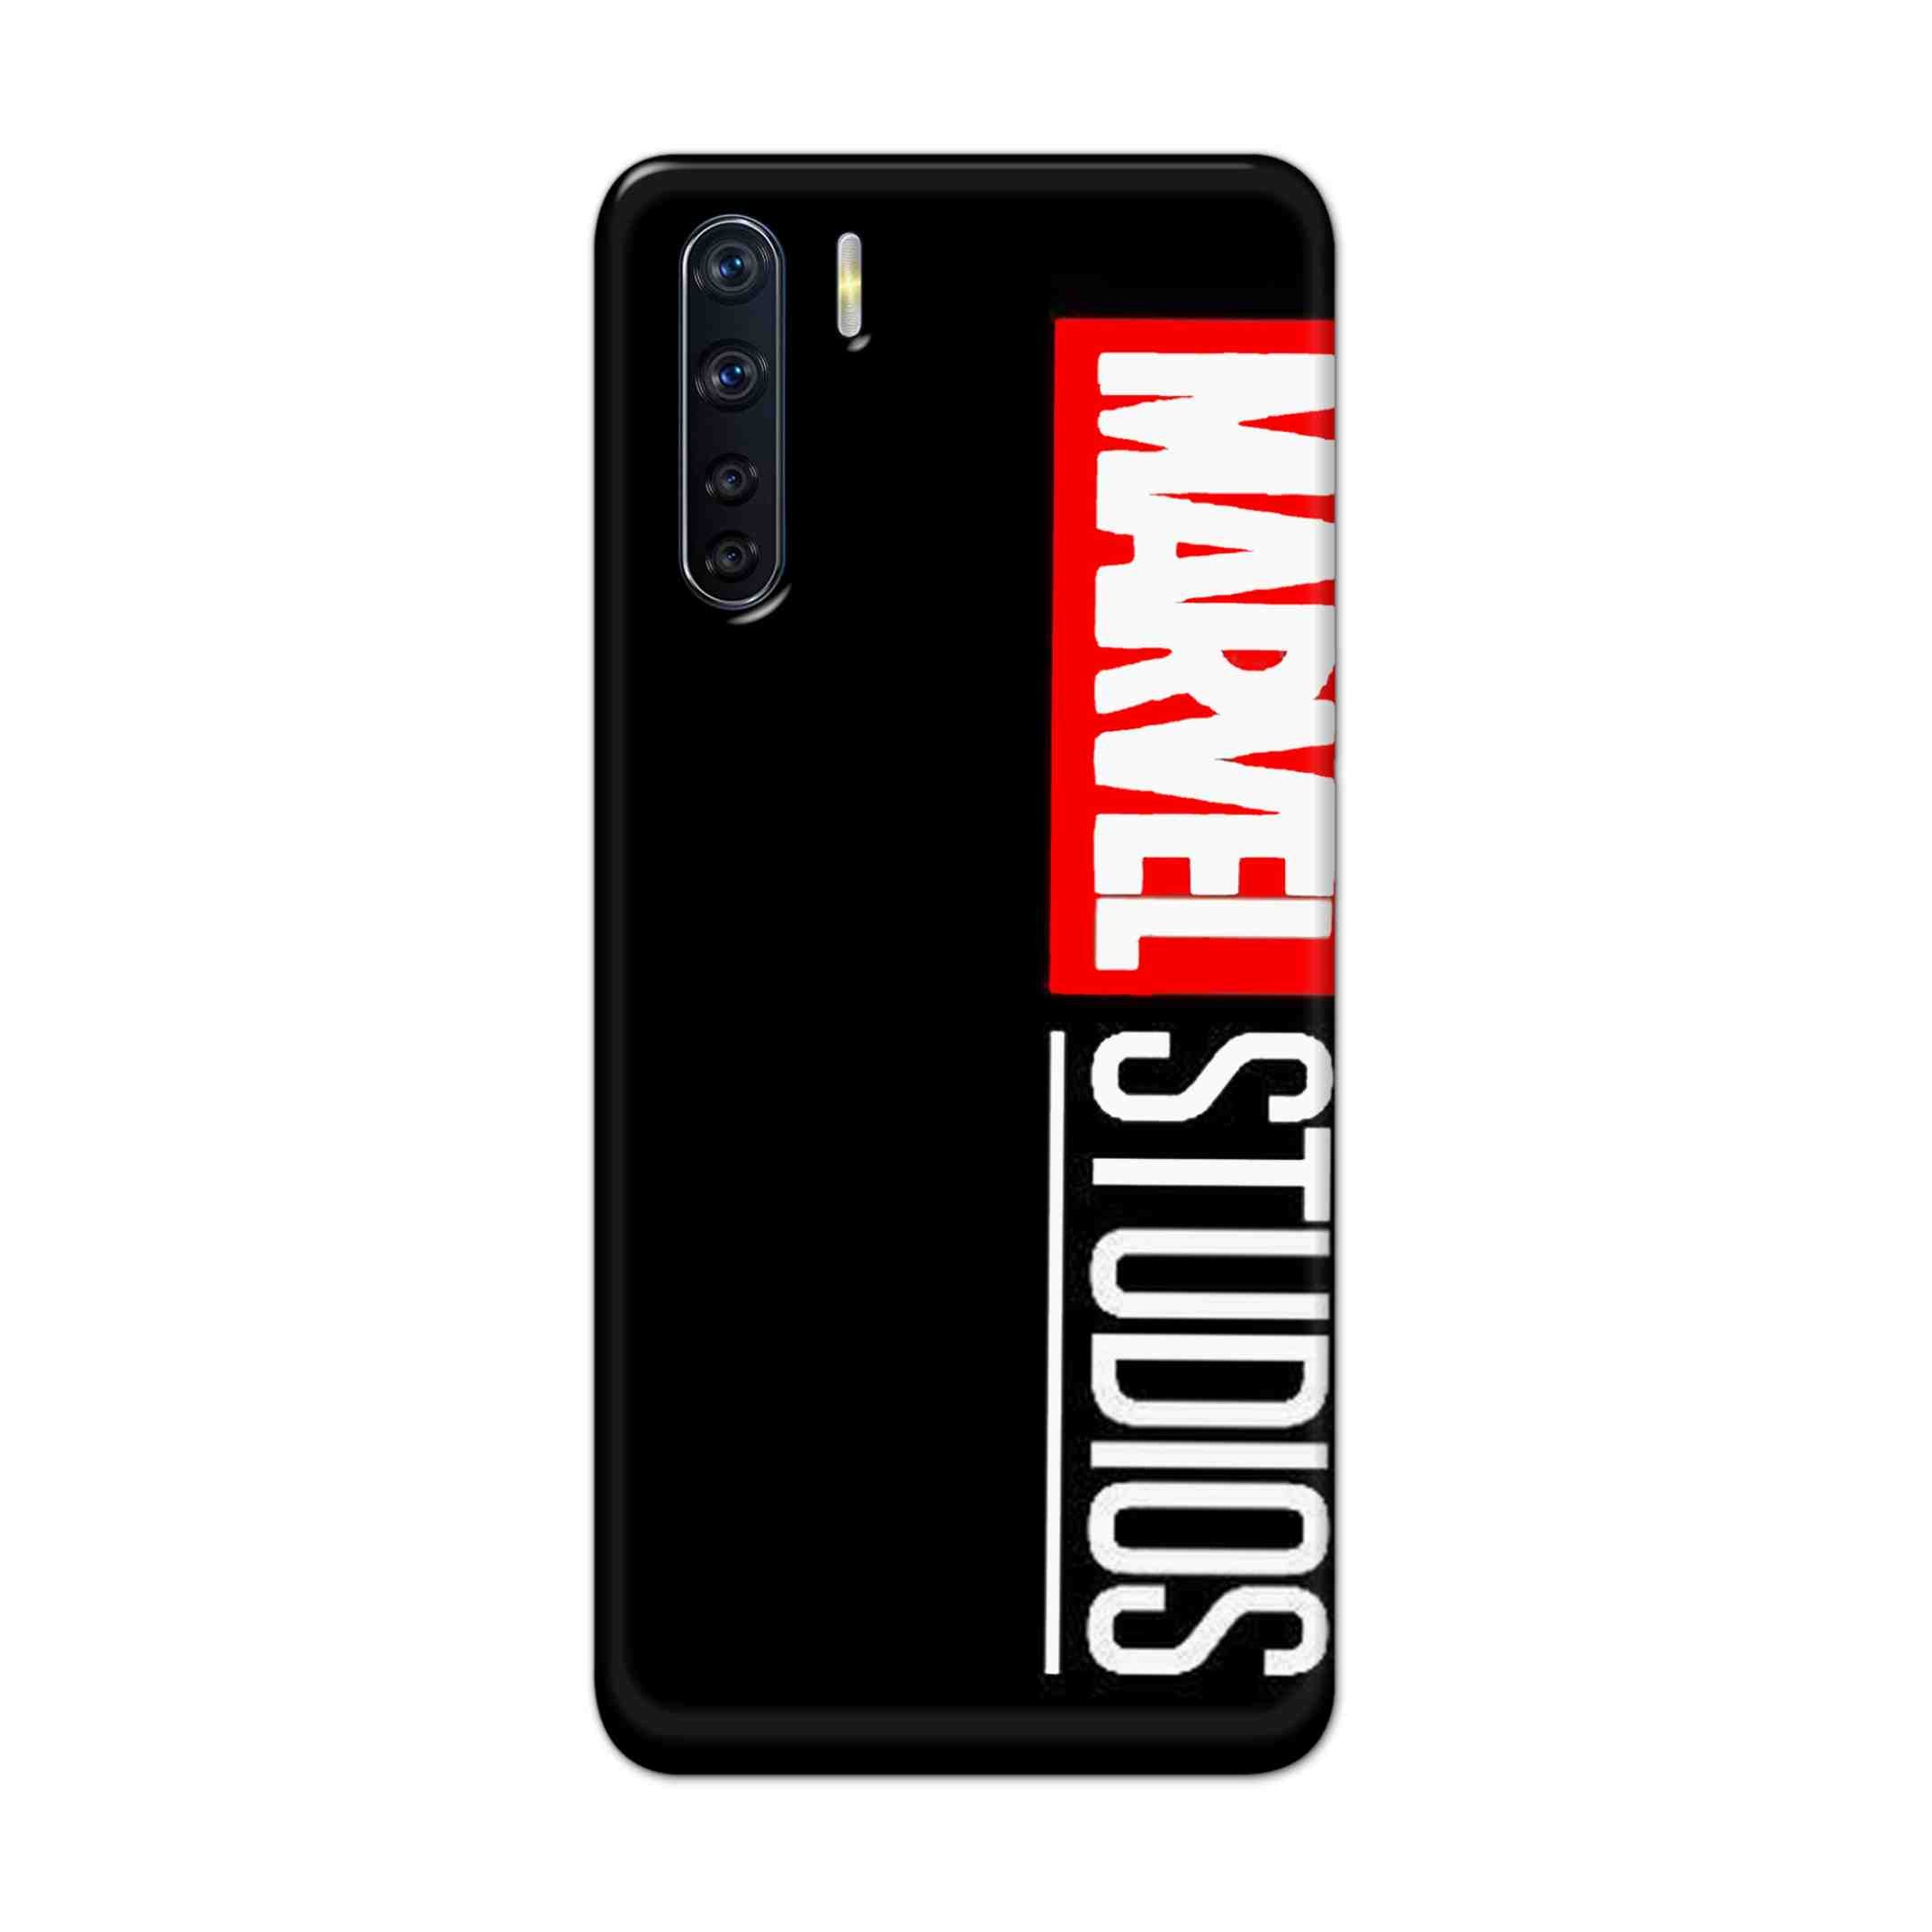 Buy Marvel Studio Hard Back Mobile Phone Case Cover For OPPO F15 Online